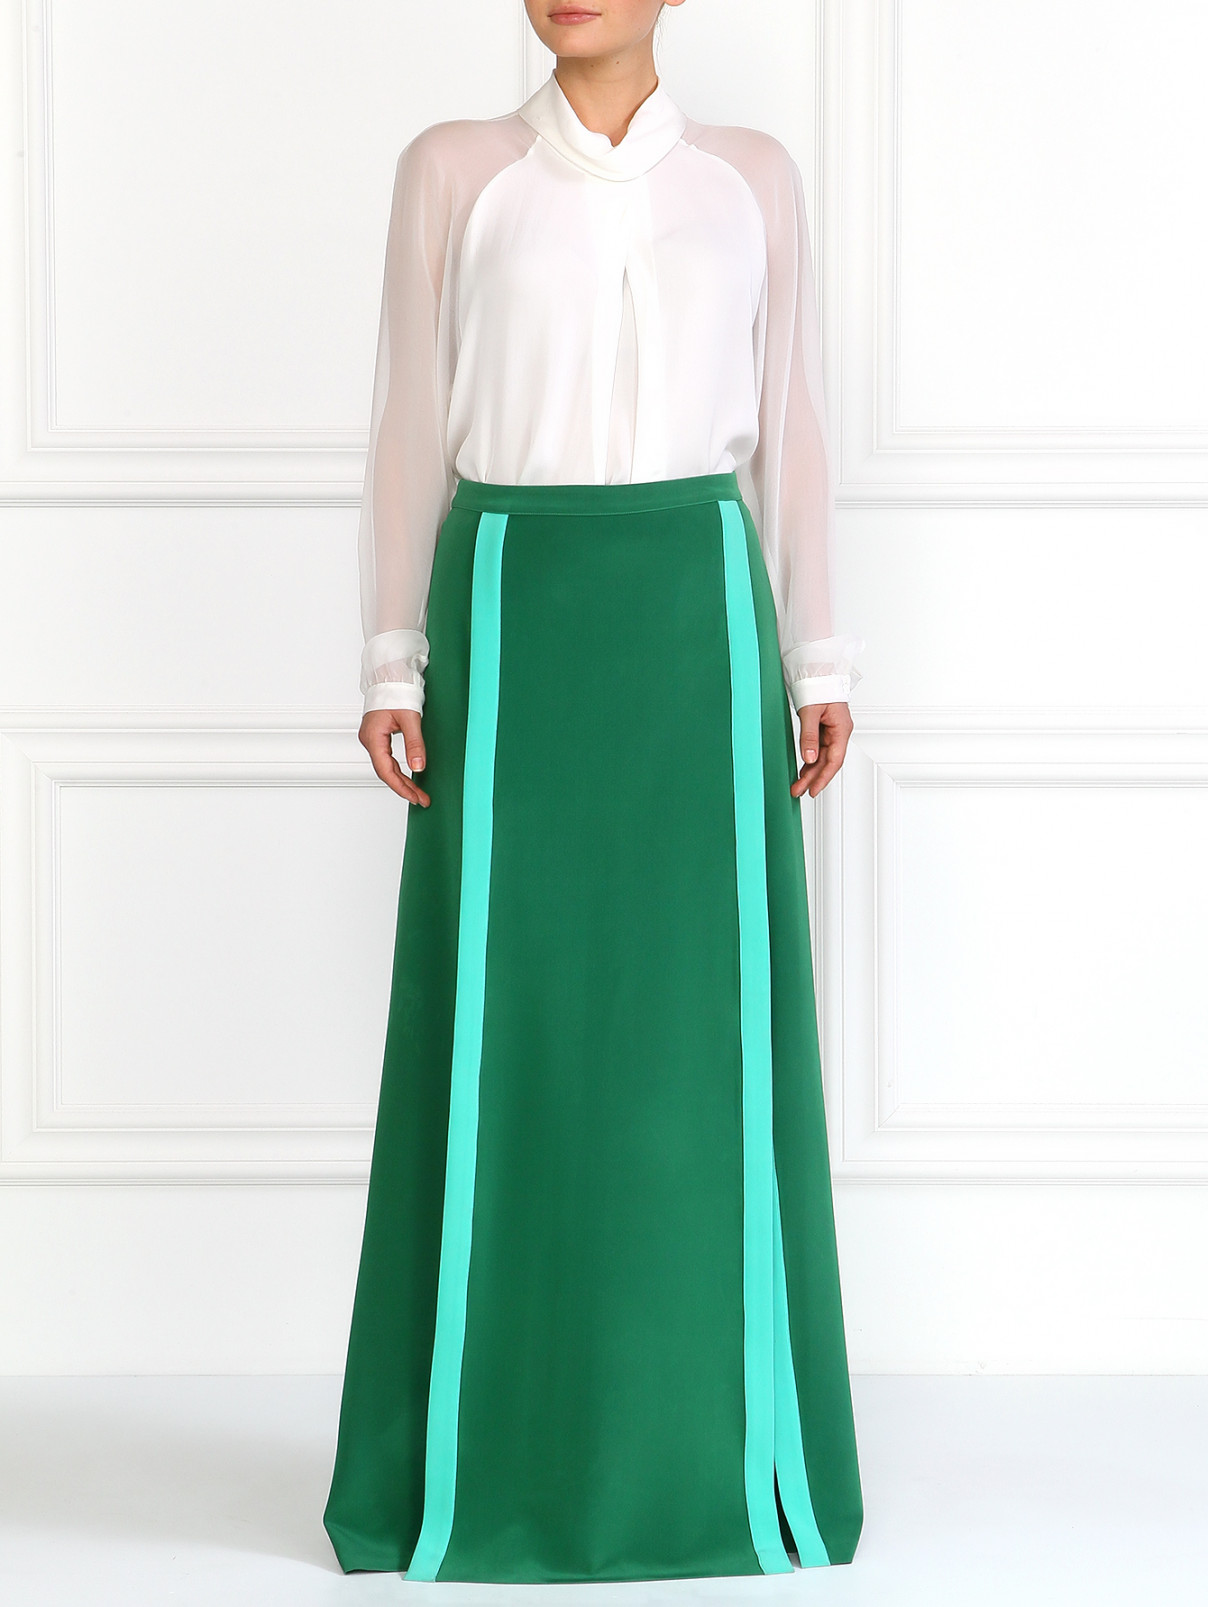 Шелковая юбка с разрезами JO NO FUI  –  Модель Общий вид  – Цвет:  Зеленый